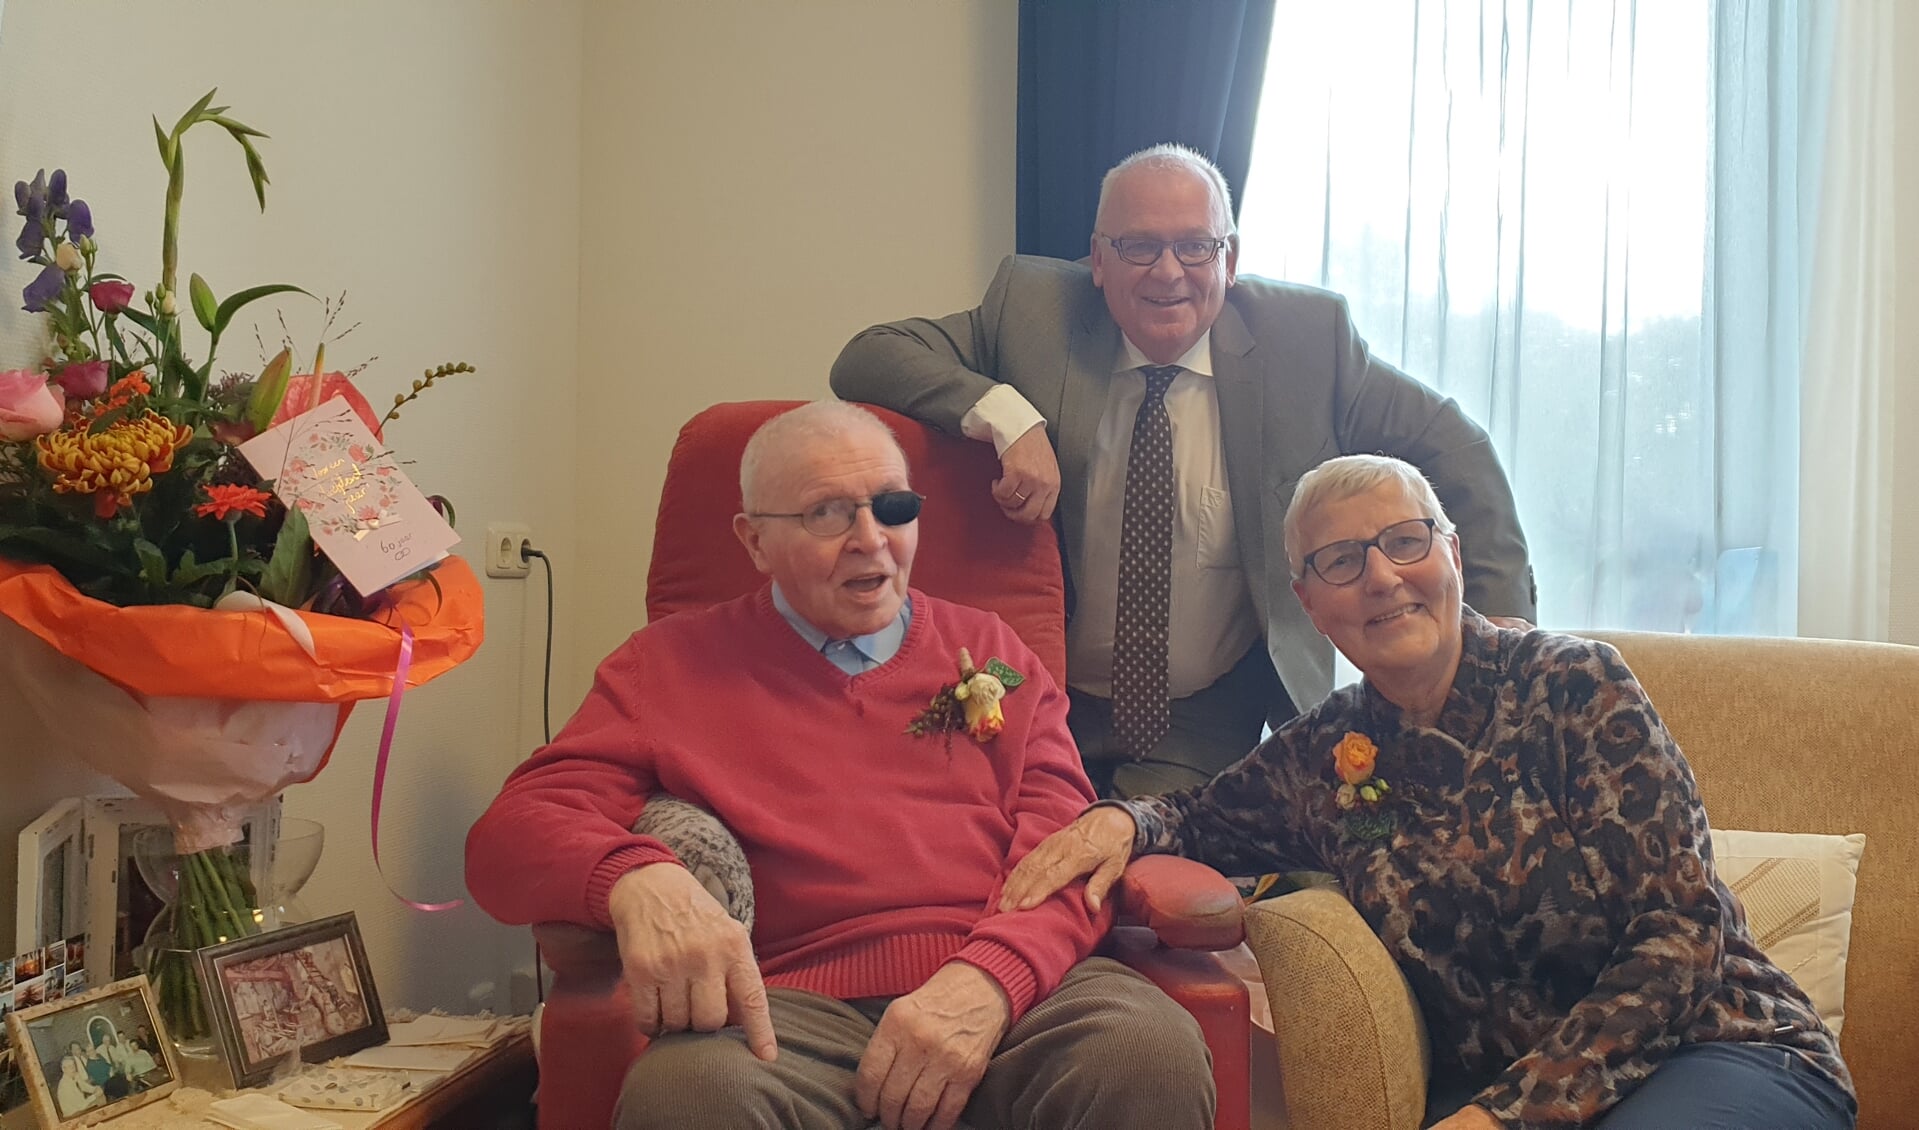 Burgemeester Hofland feliciteerde namens de gemeente Rijssen-Holten het echtpaar Klein Schaarsberg-Leus met hun 60-jarig huwelijk.